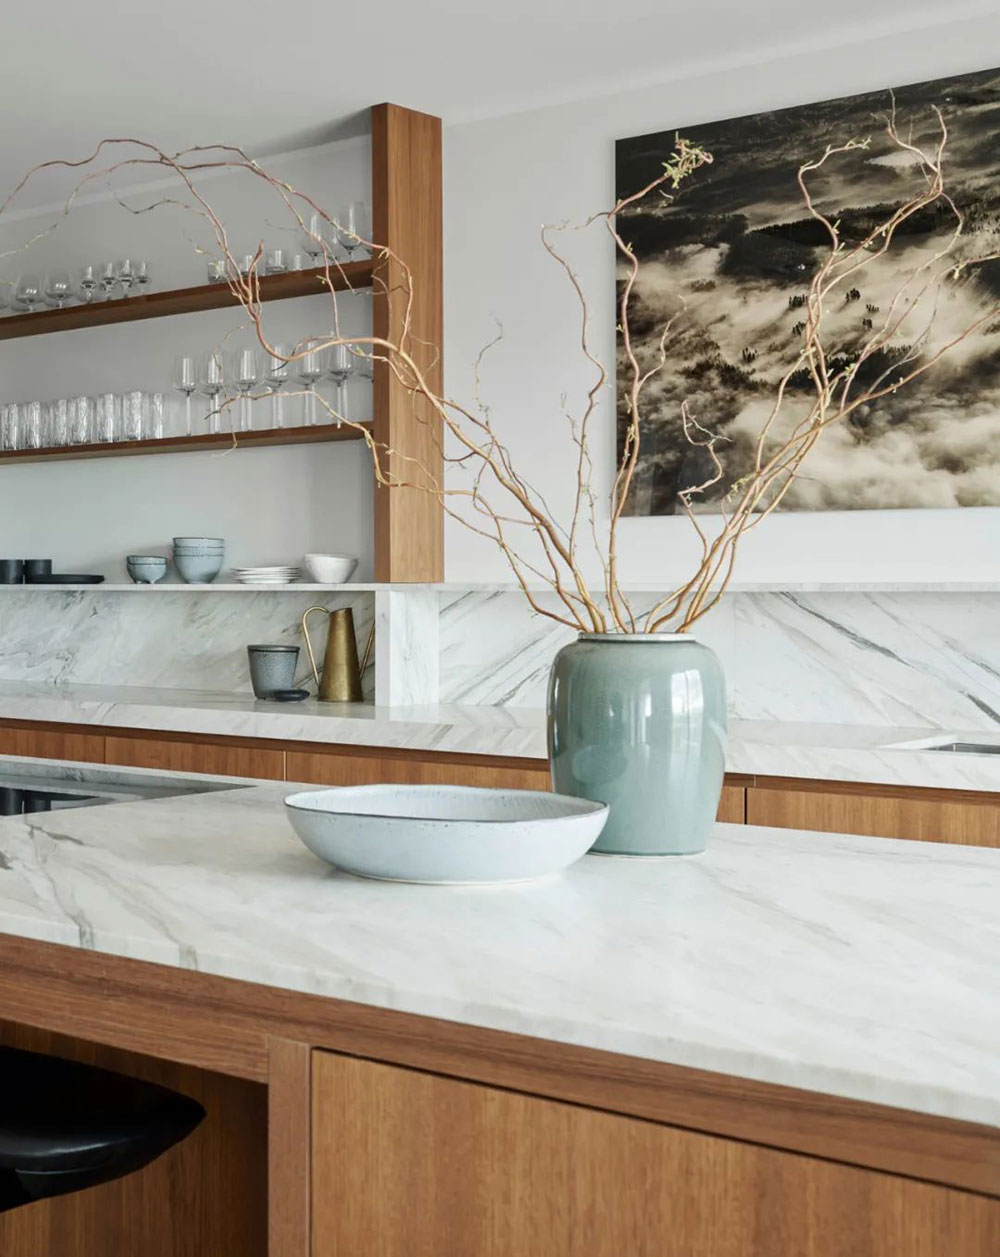 Кухня из дерева и ковры в интерьере: современная квартира в Швеции